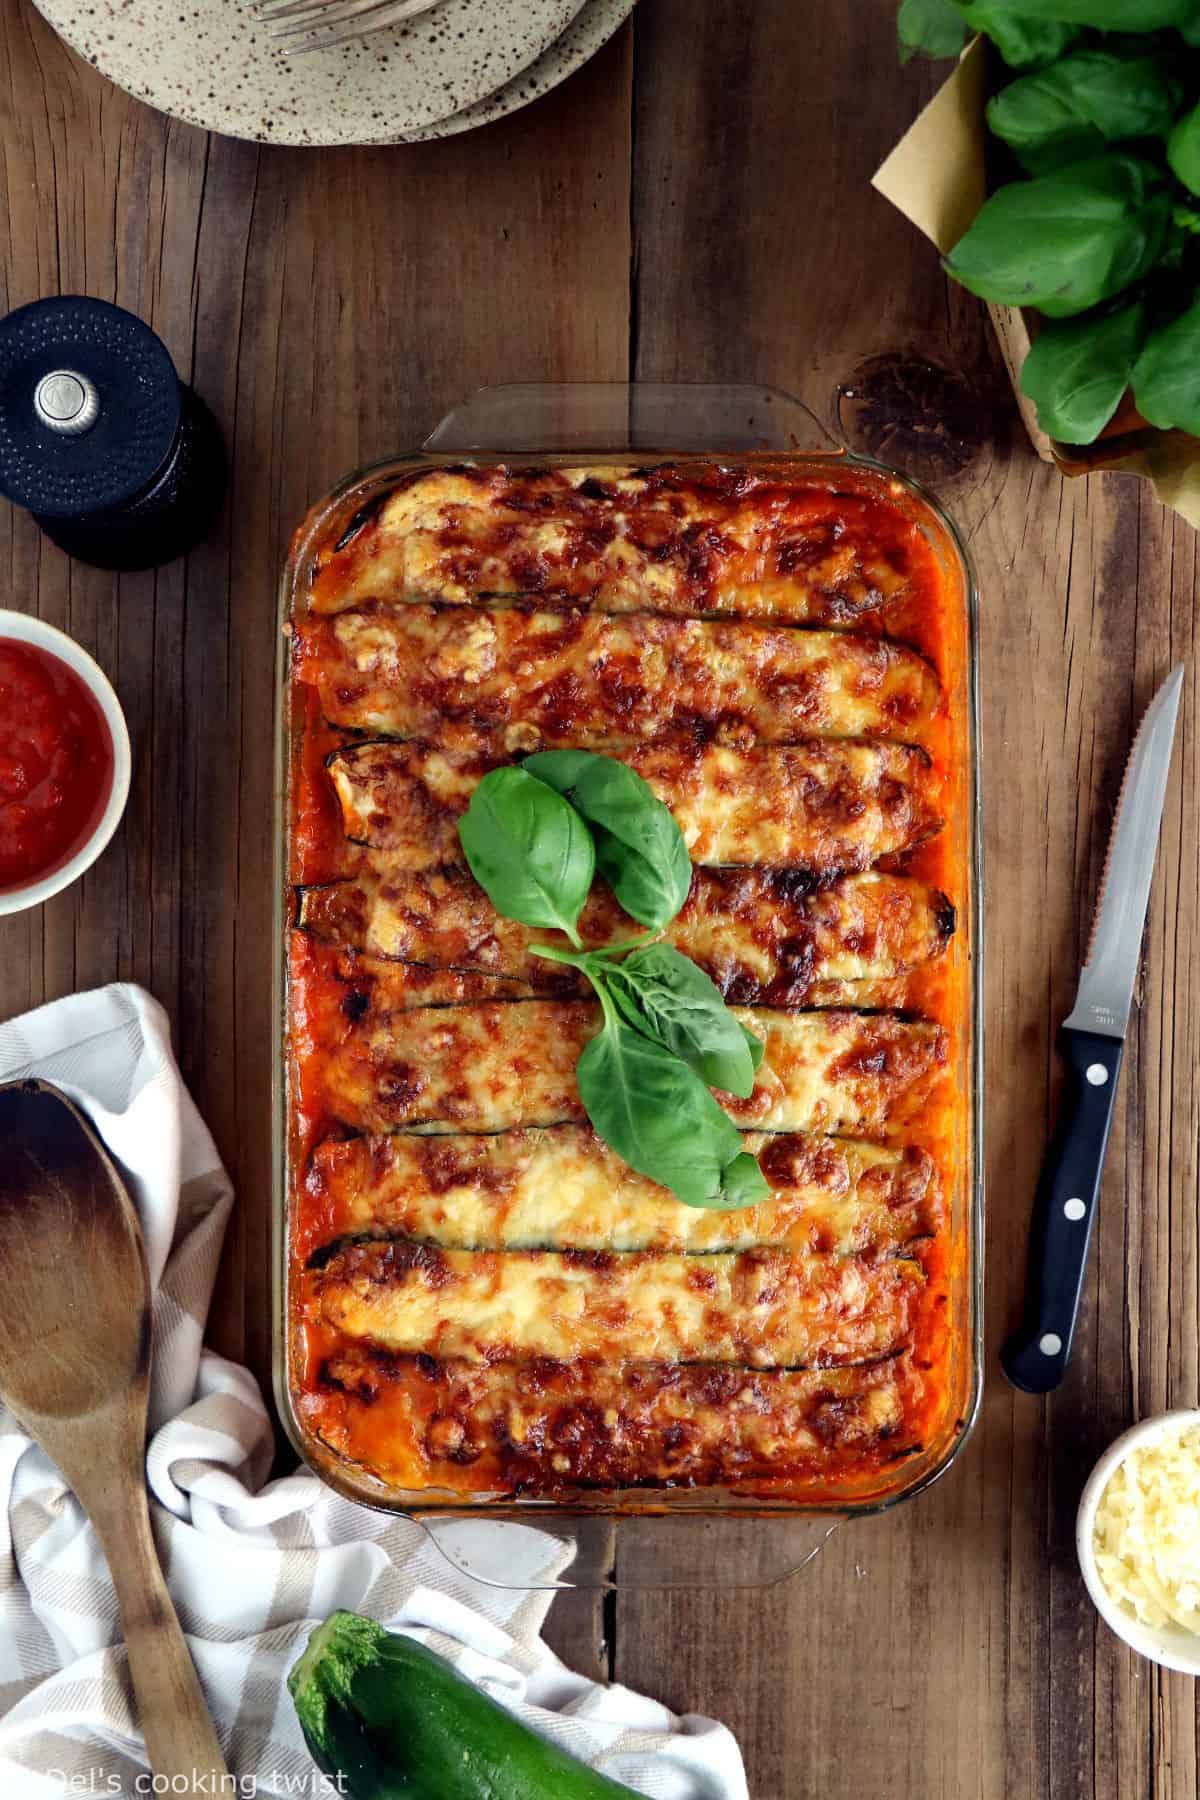 Recette Lasagnes à la viande - La cuisine familiale : Un plat, Une recette